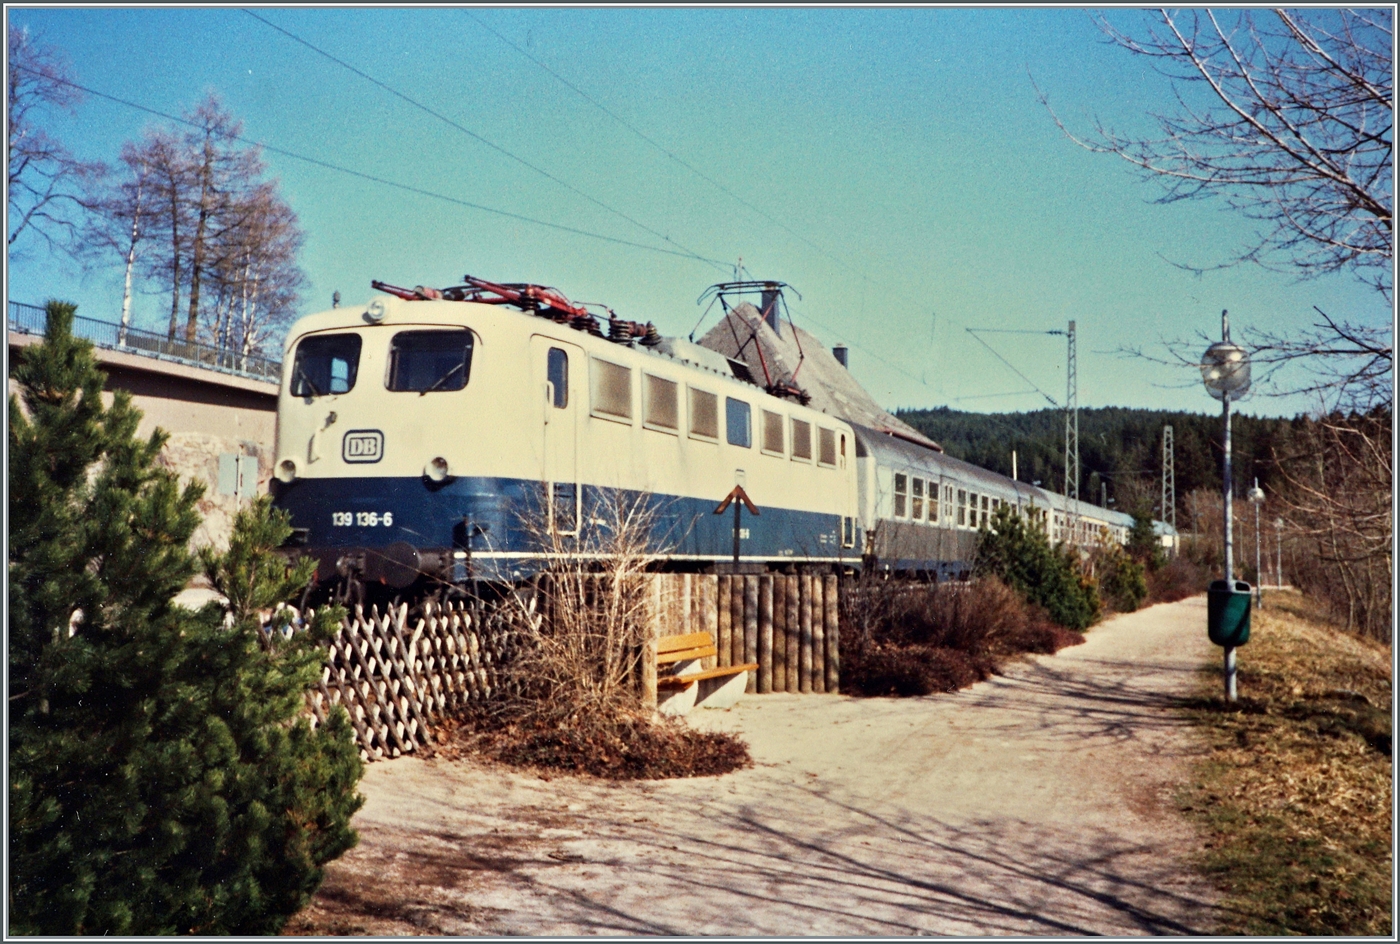 Die DB 139 136-6 mit ihrem Nahverkerszug auf dem Weg von Seebrugg nach Freiburg i.B. beim Halt in Schluchsee. Das Motiv des Bildes ist eher das Umfeld aus jener Zeit, als der Zug selbst.  

Analogbild vom April 1988